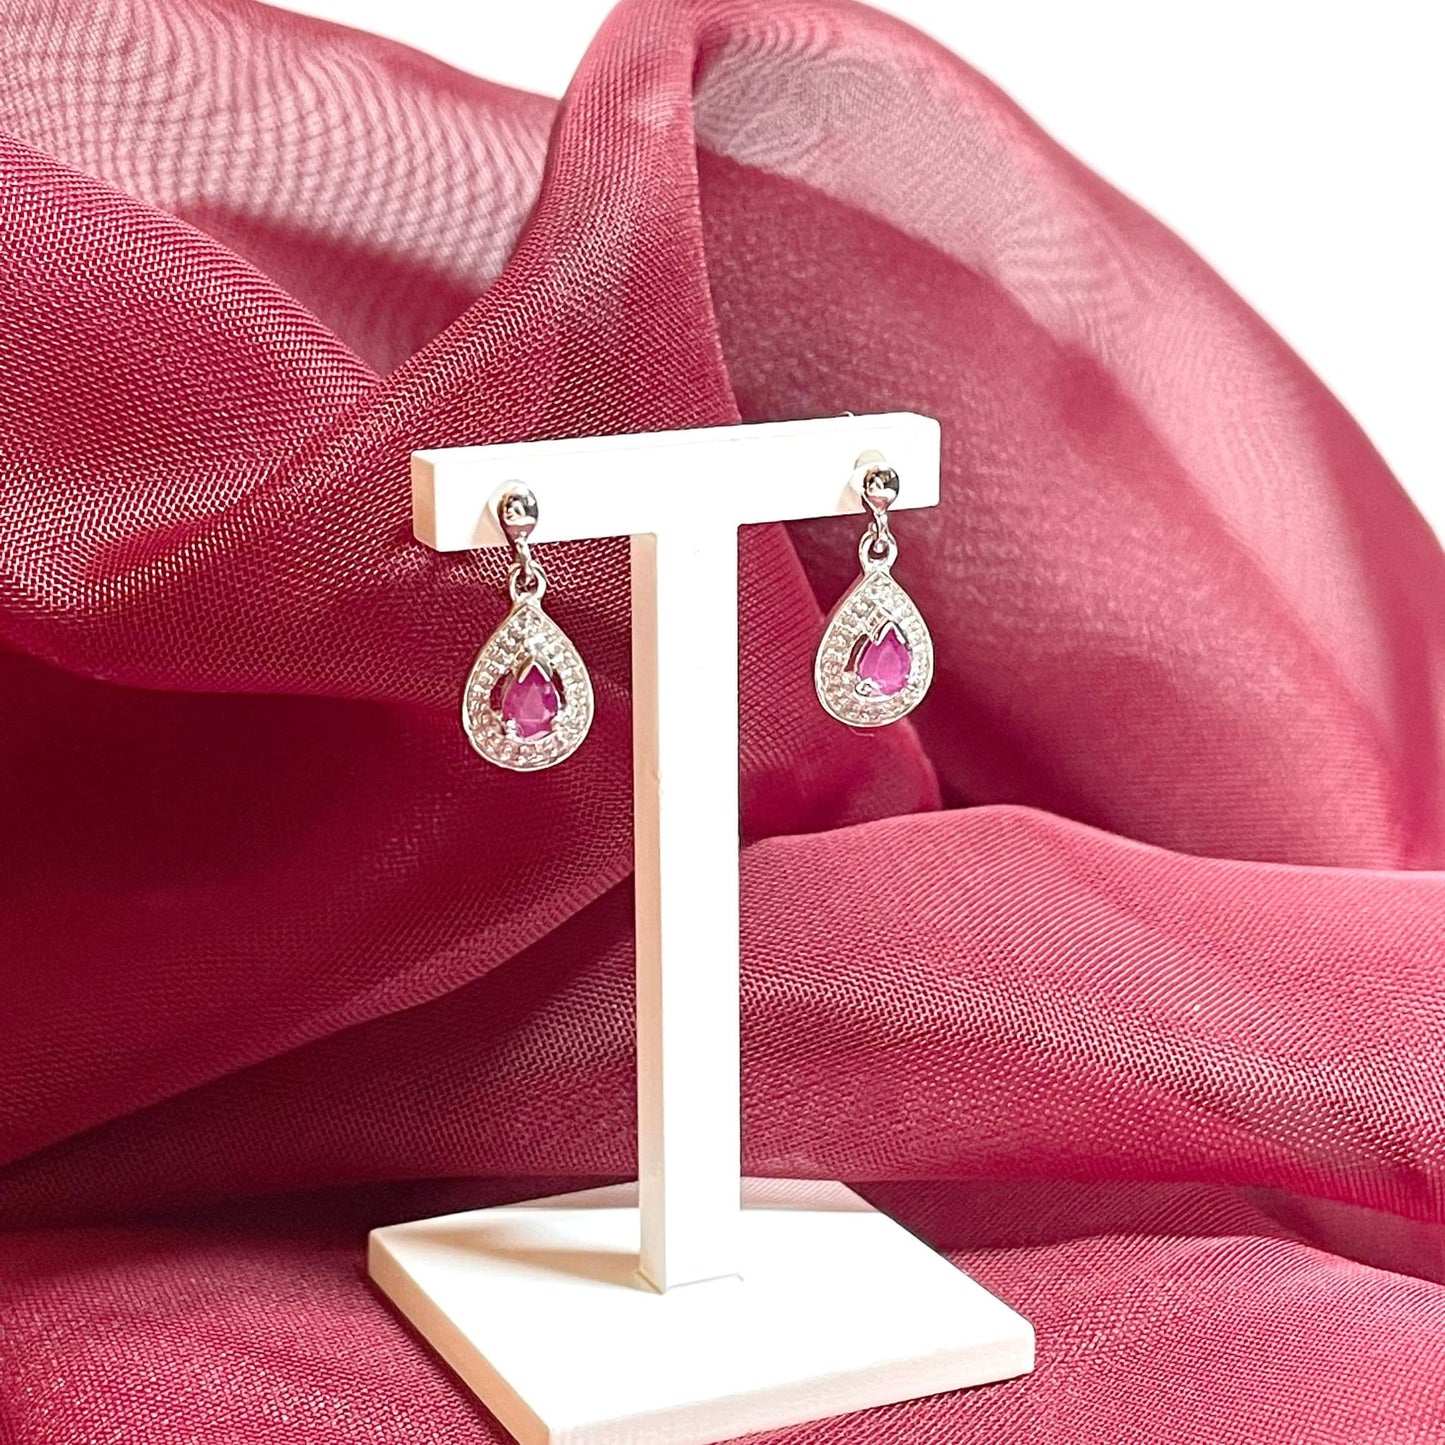 Ruby silver drop earrings